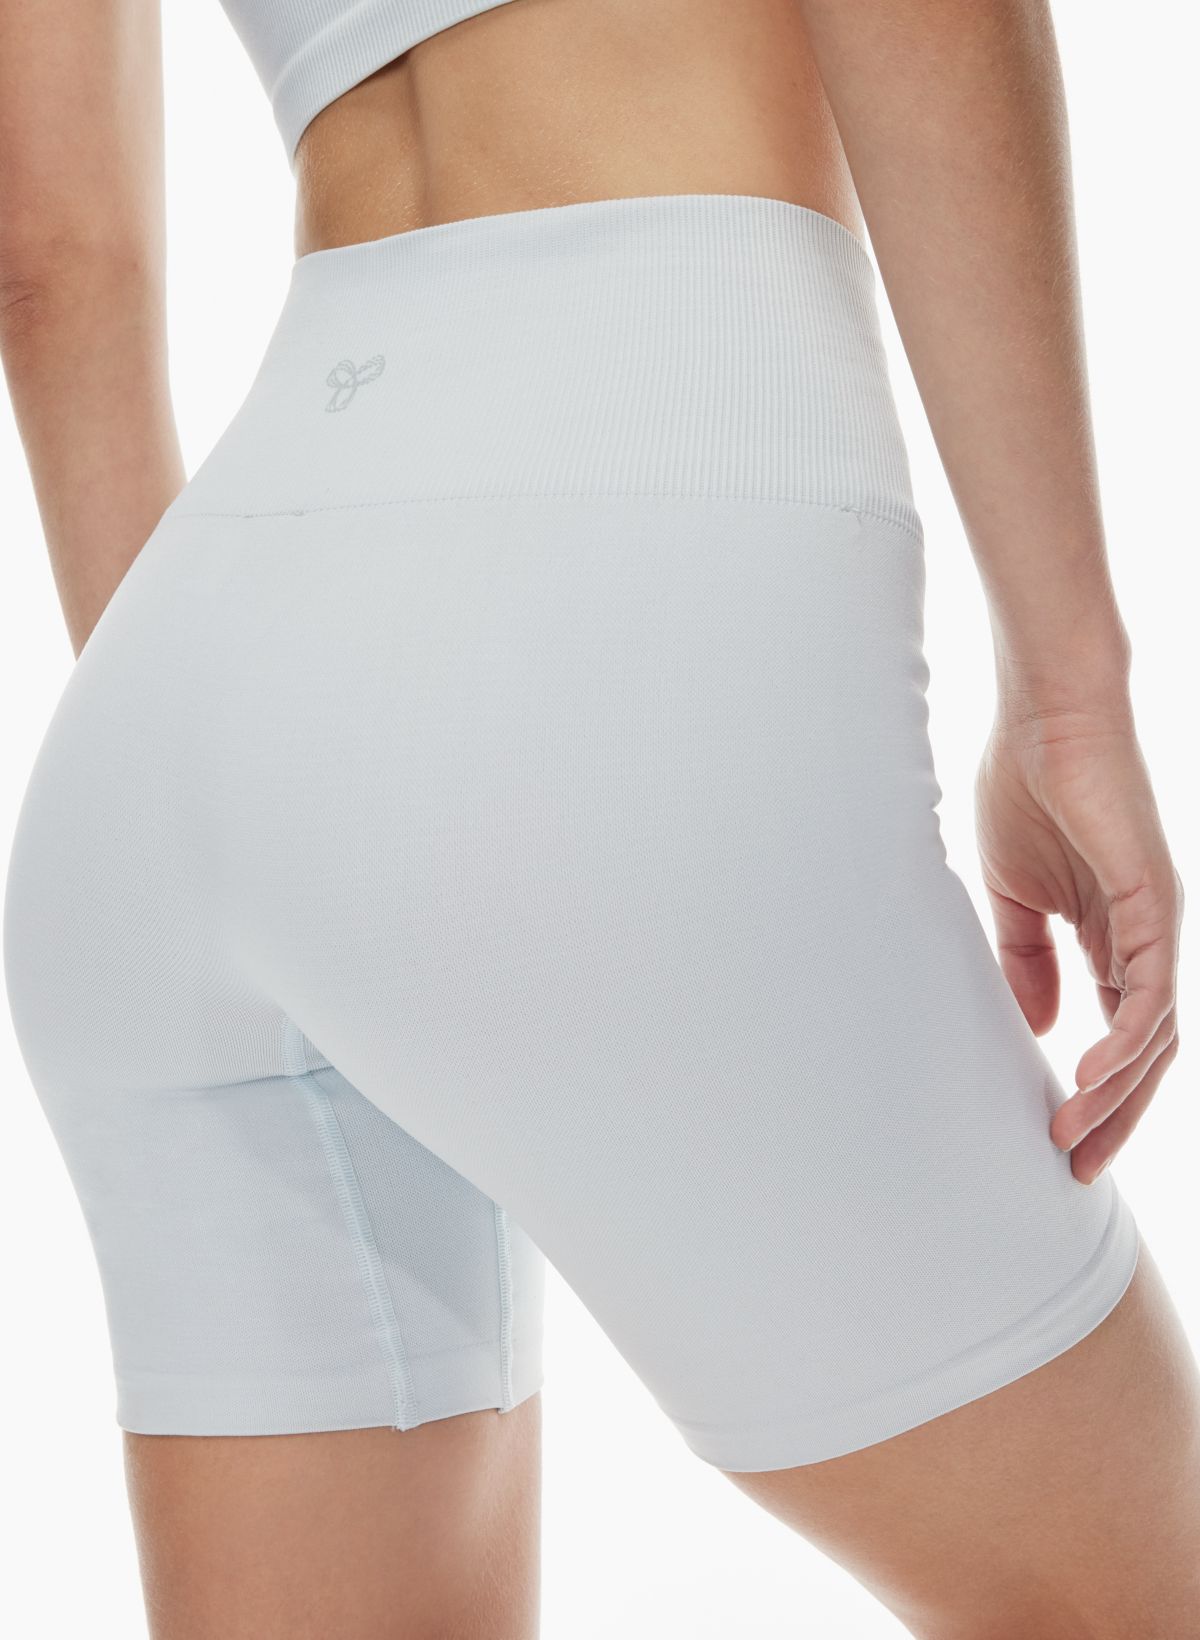 Sexy Basics Yoga Bike Shorts 3 Pack White NEW Size Large